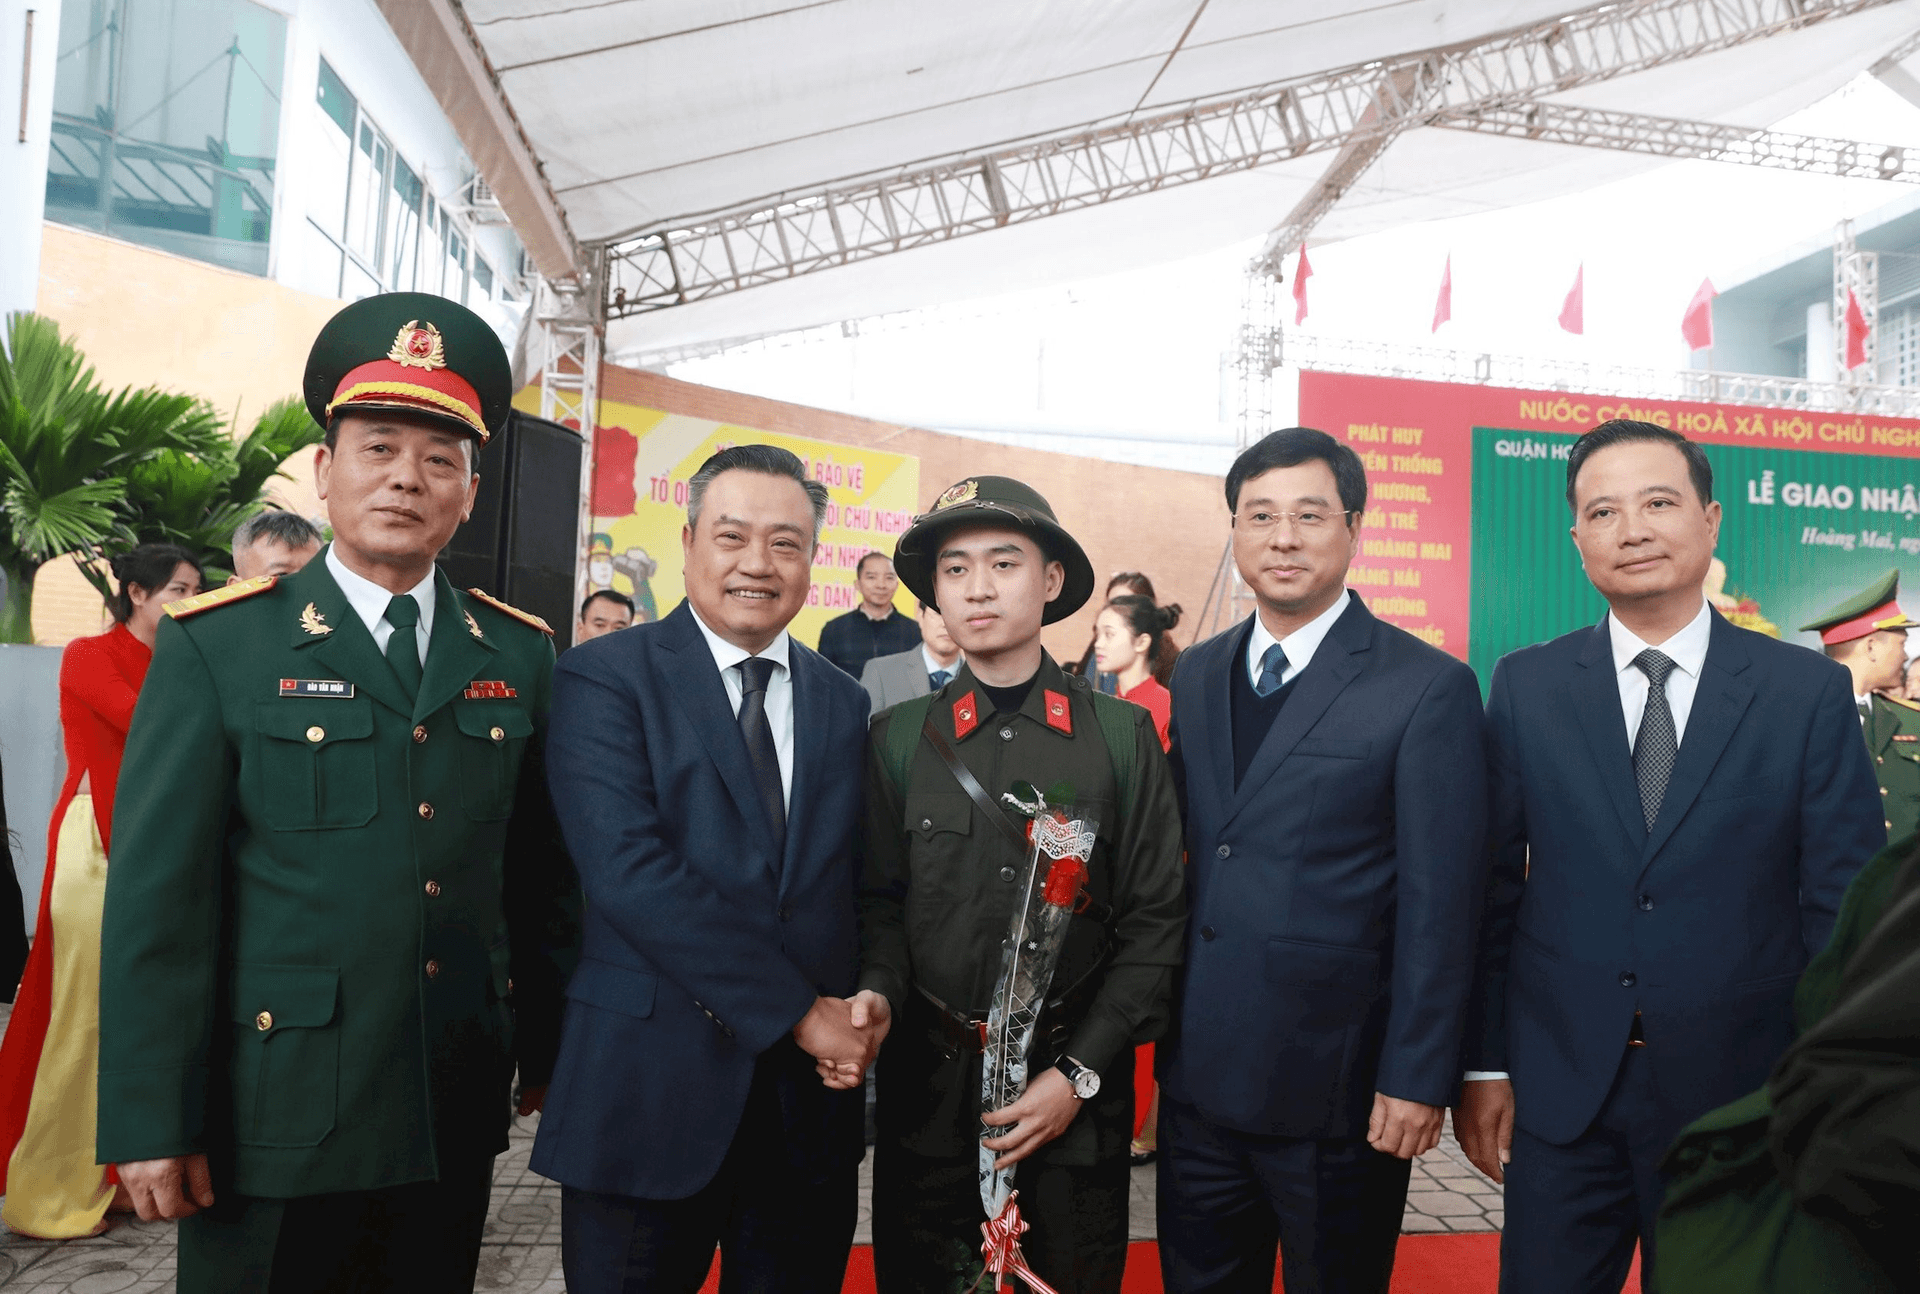 Đại tướng Lương Cường, lãnh đạo Hà Nội động viên tân binh lên đường nhập ngũ- Ảnh 5.